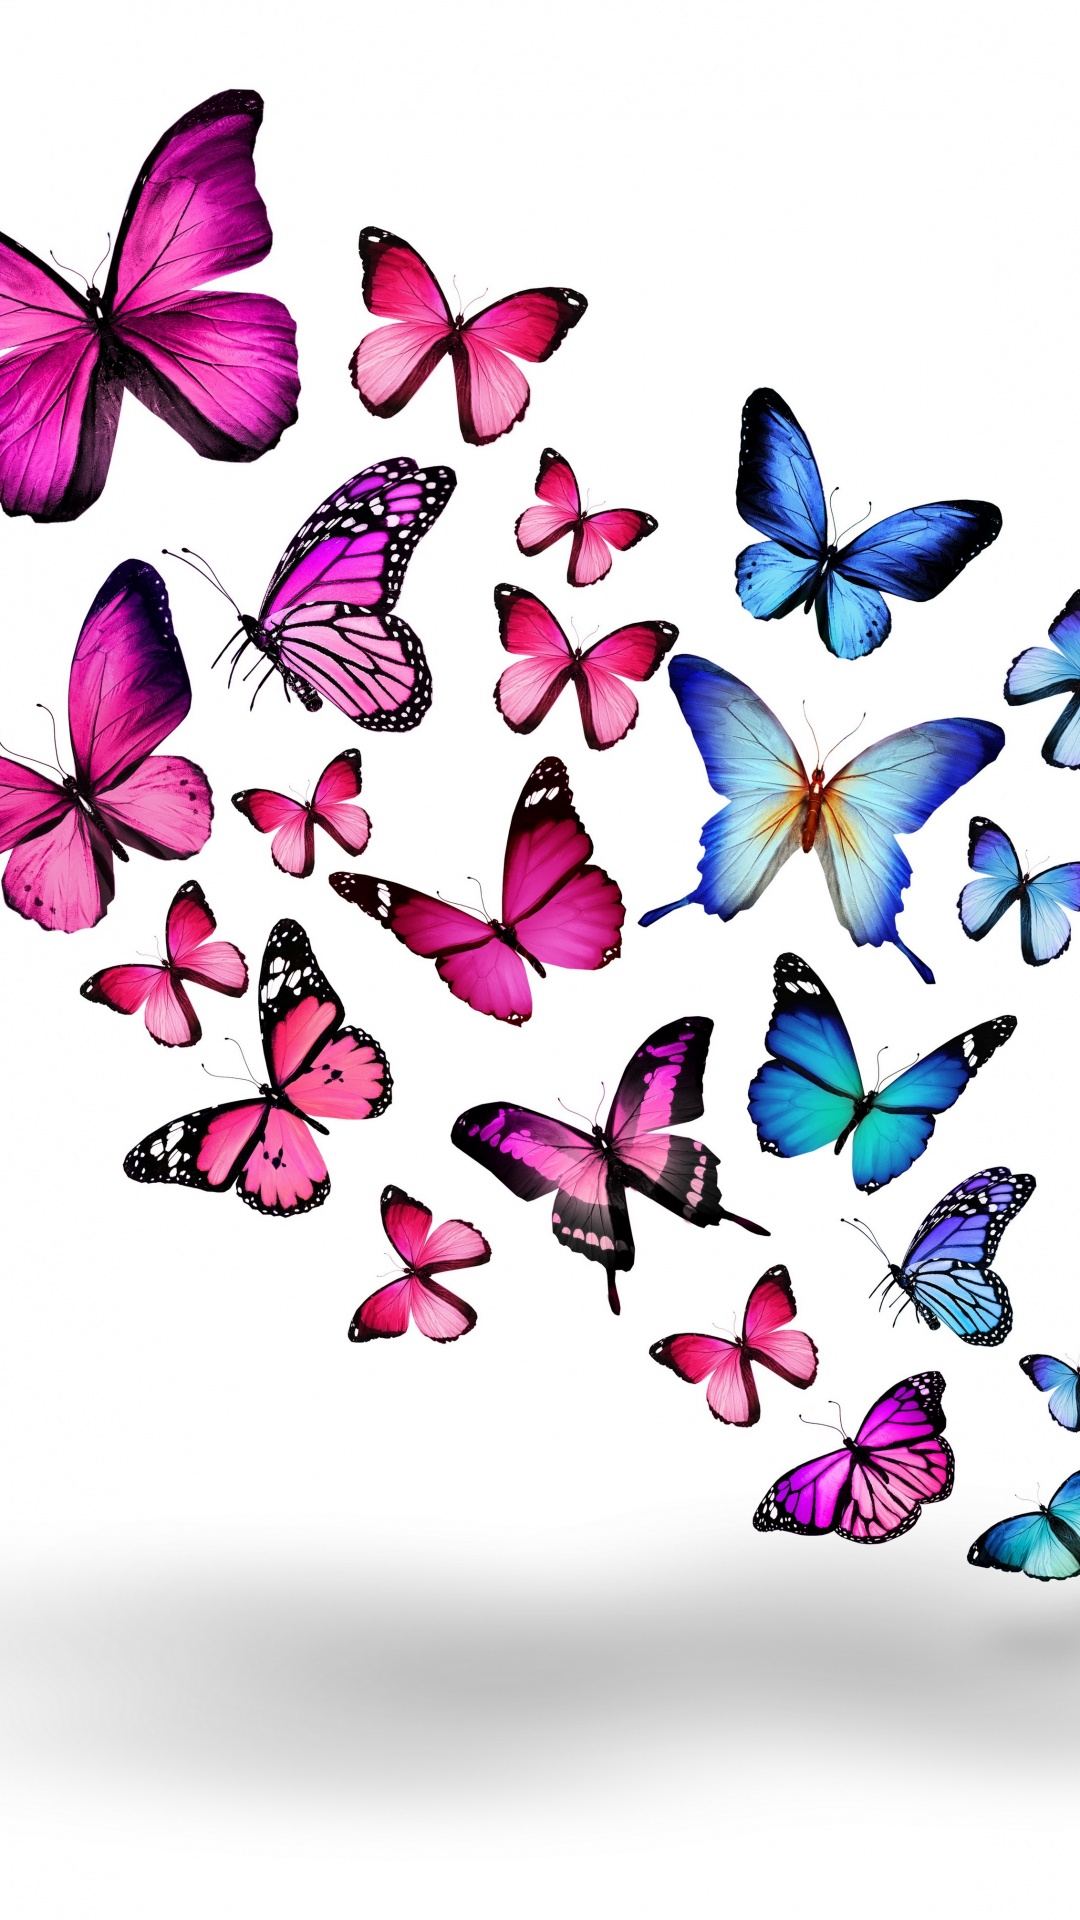 Papillons Bleus et Violets Sur Fond Blanc. Wallpaper in 1080x1920 Resolution